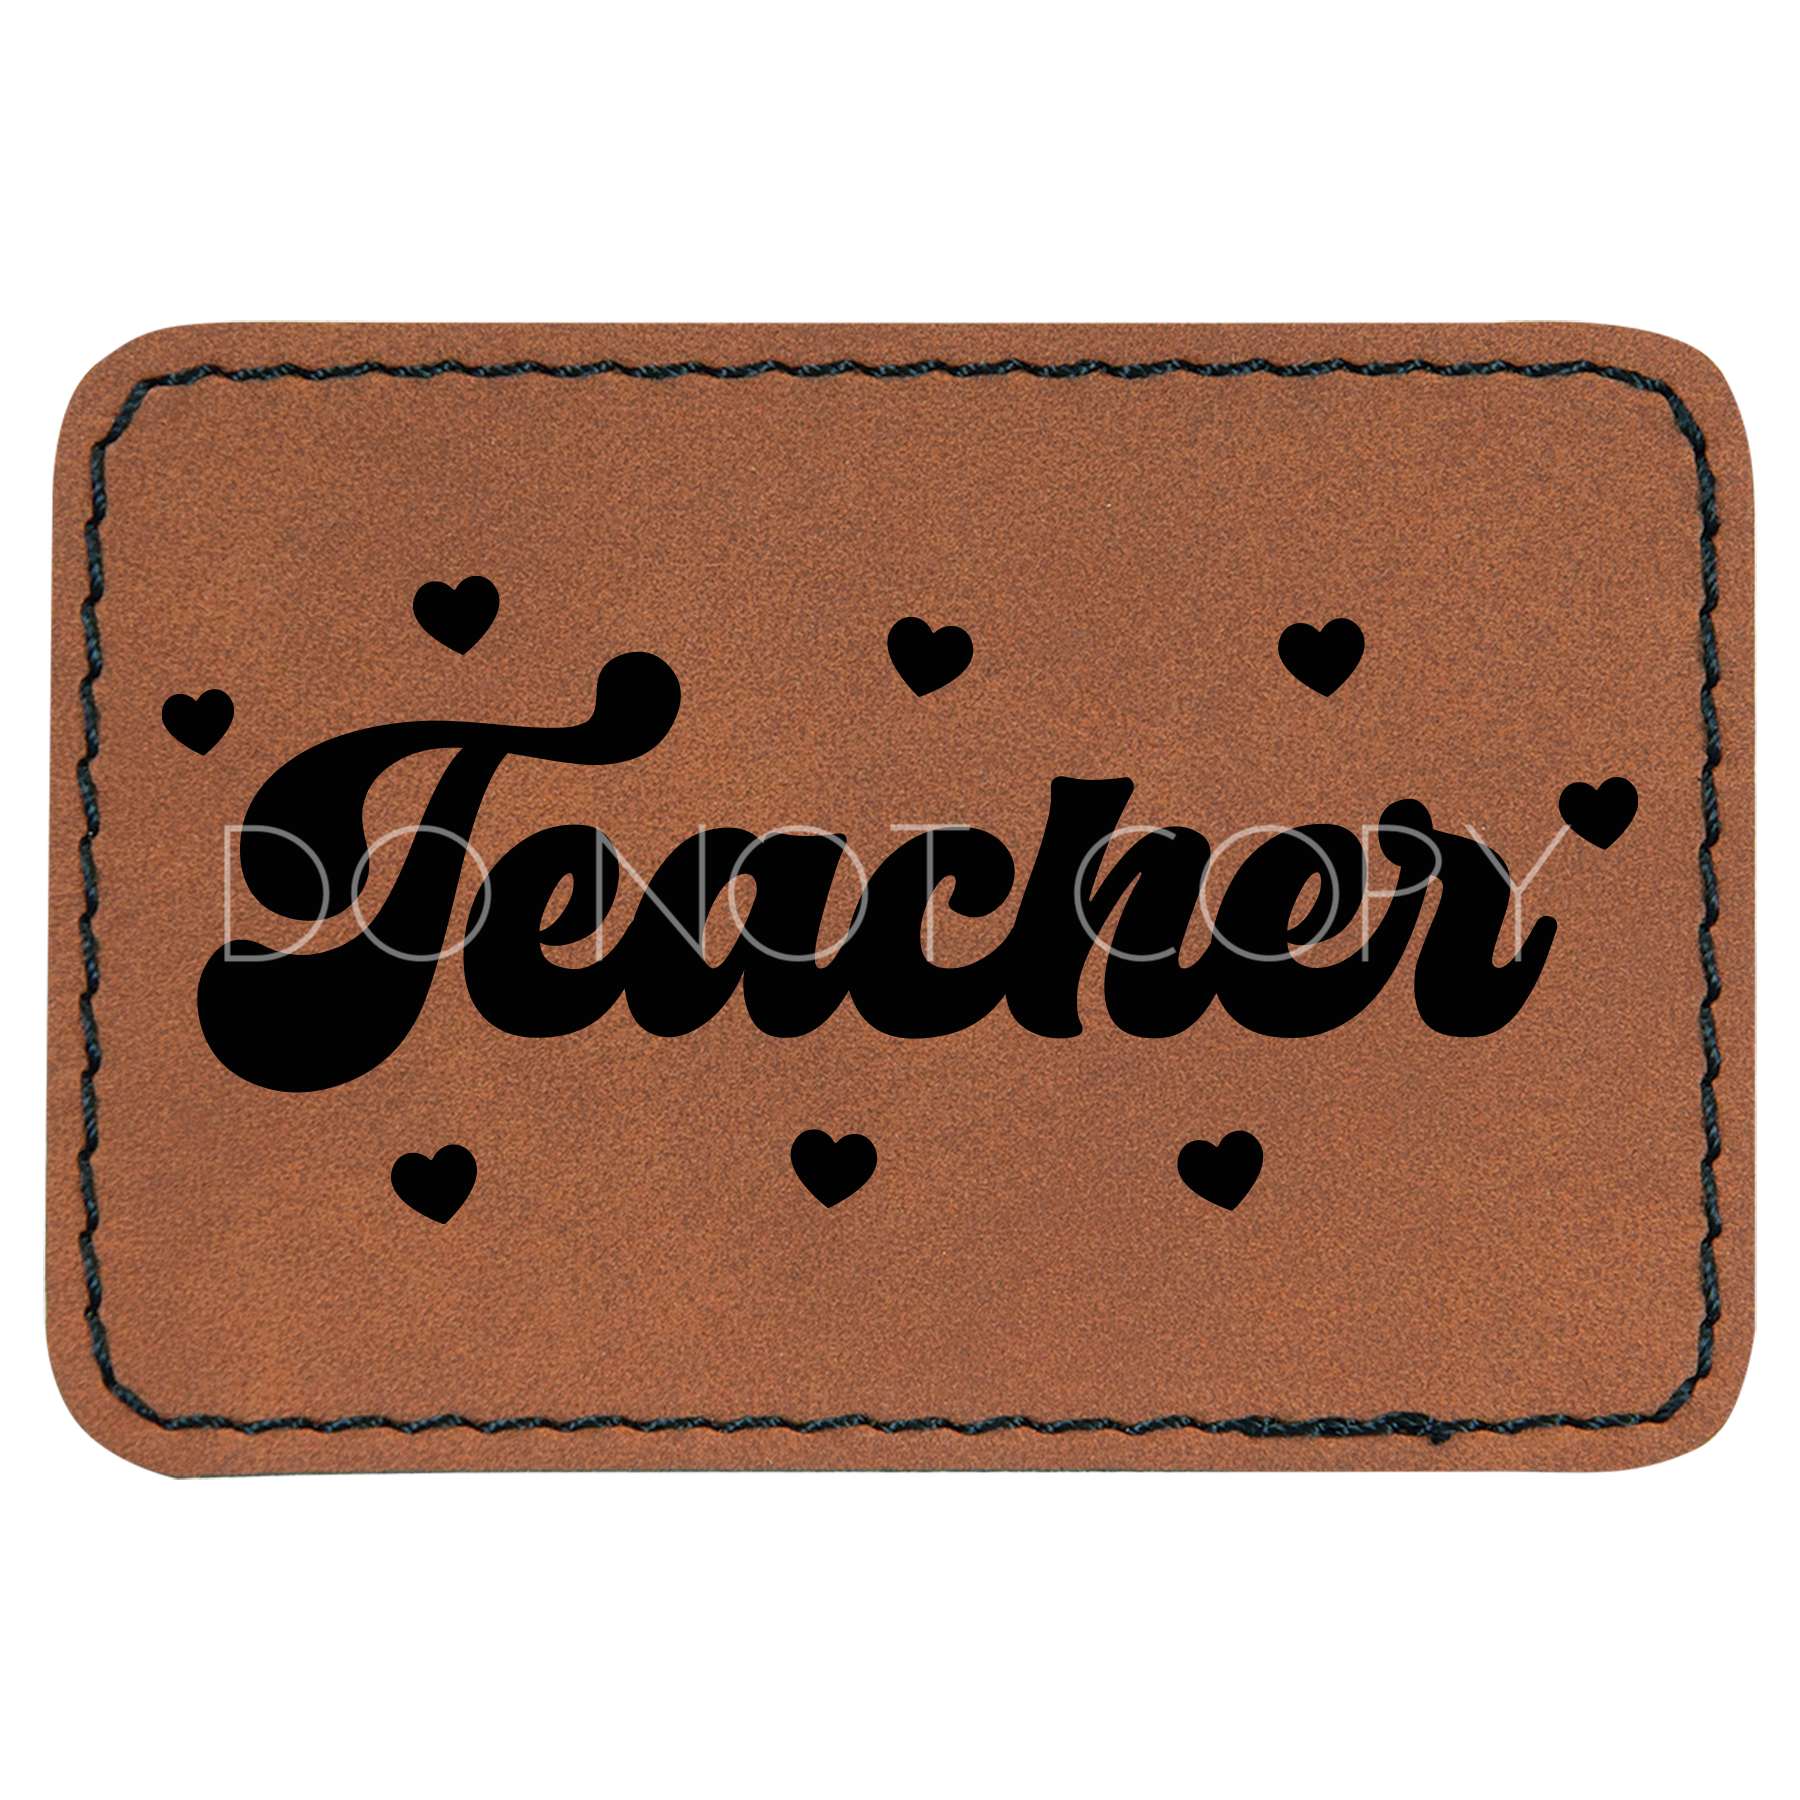 Teacher Heart Patch